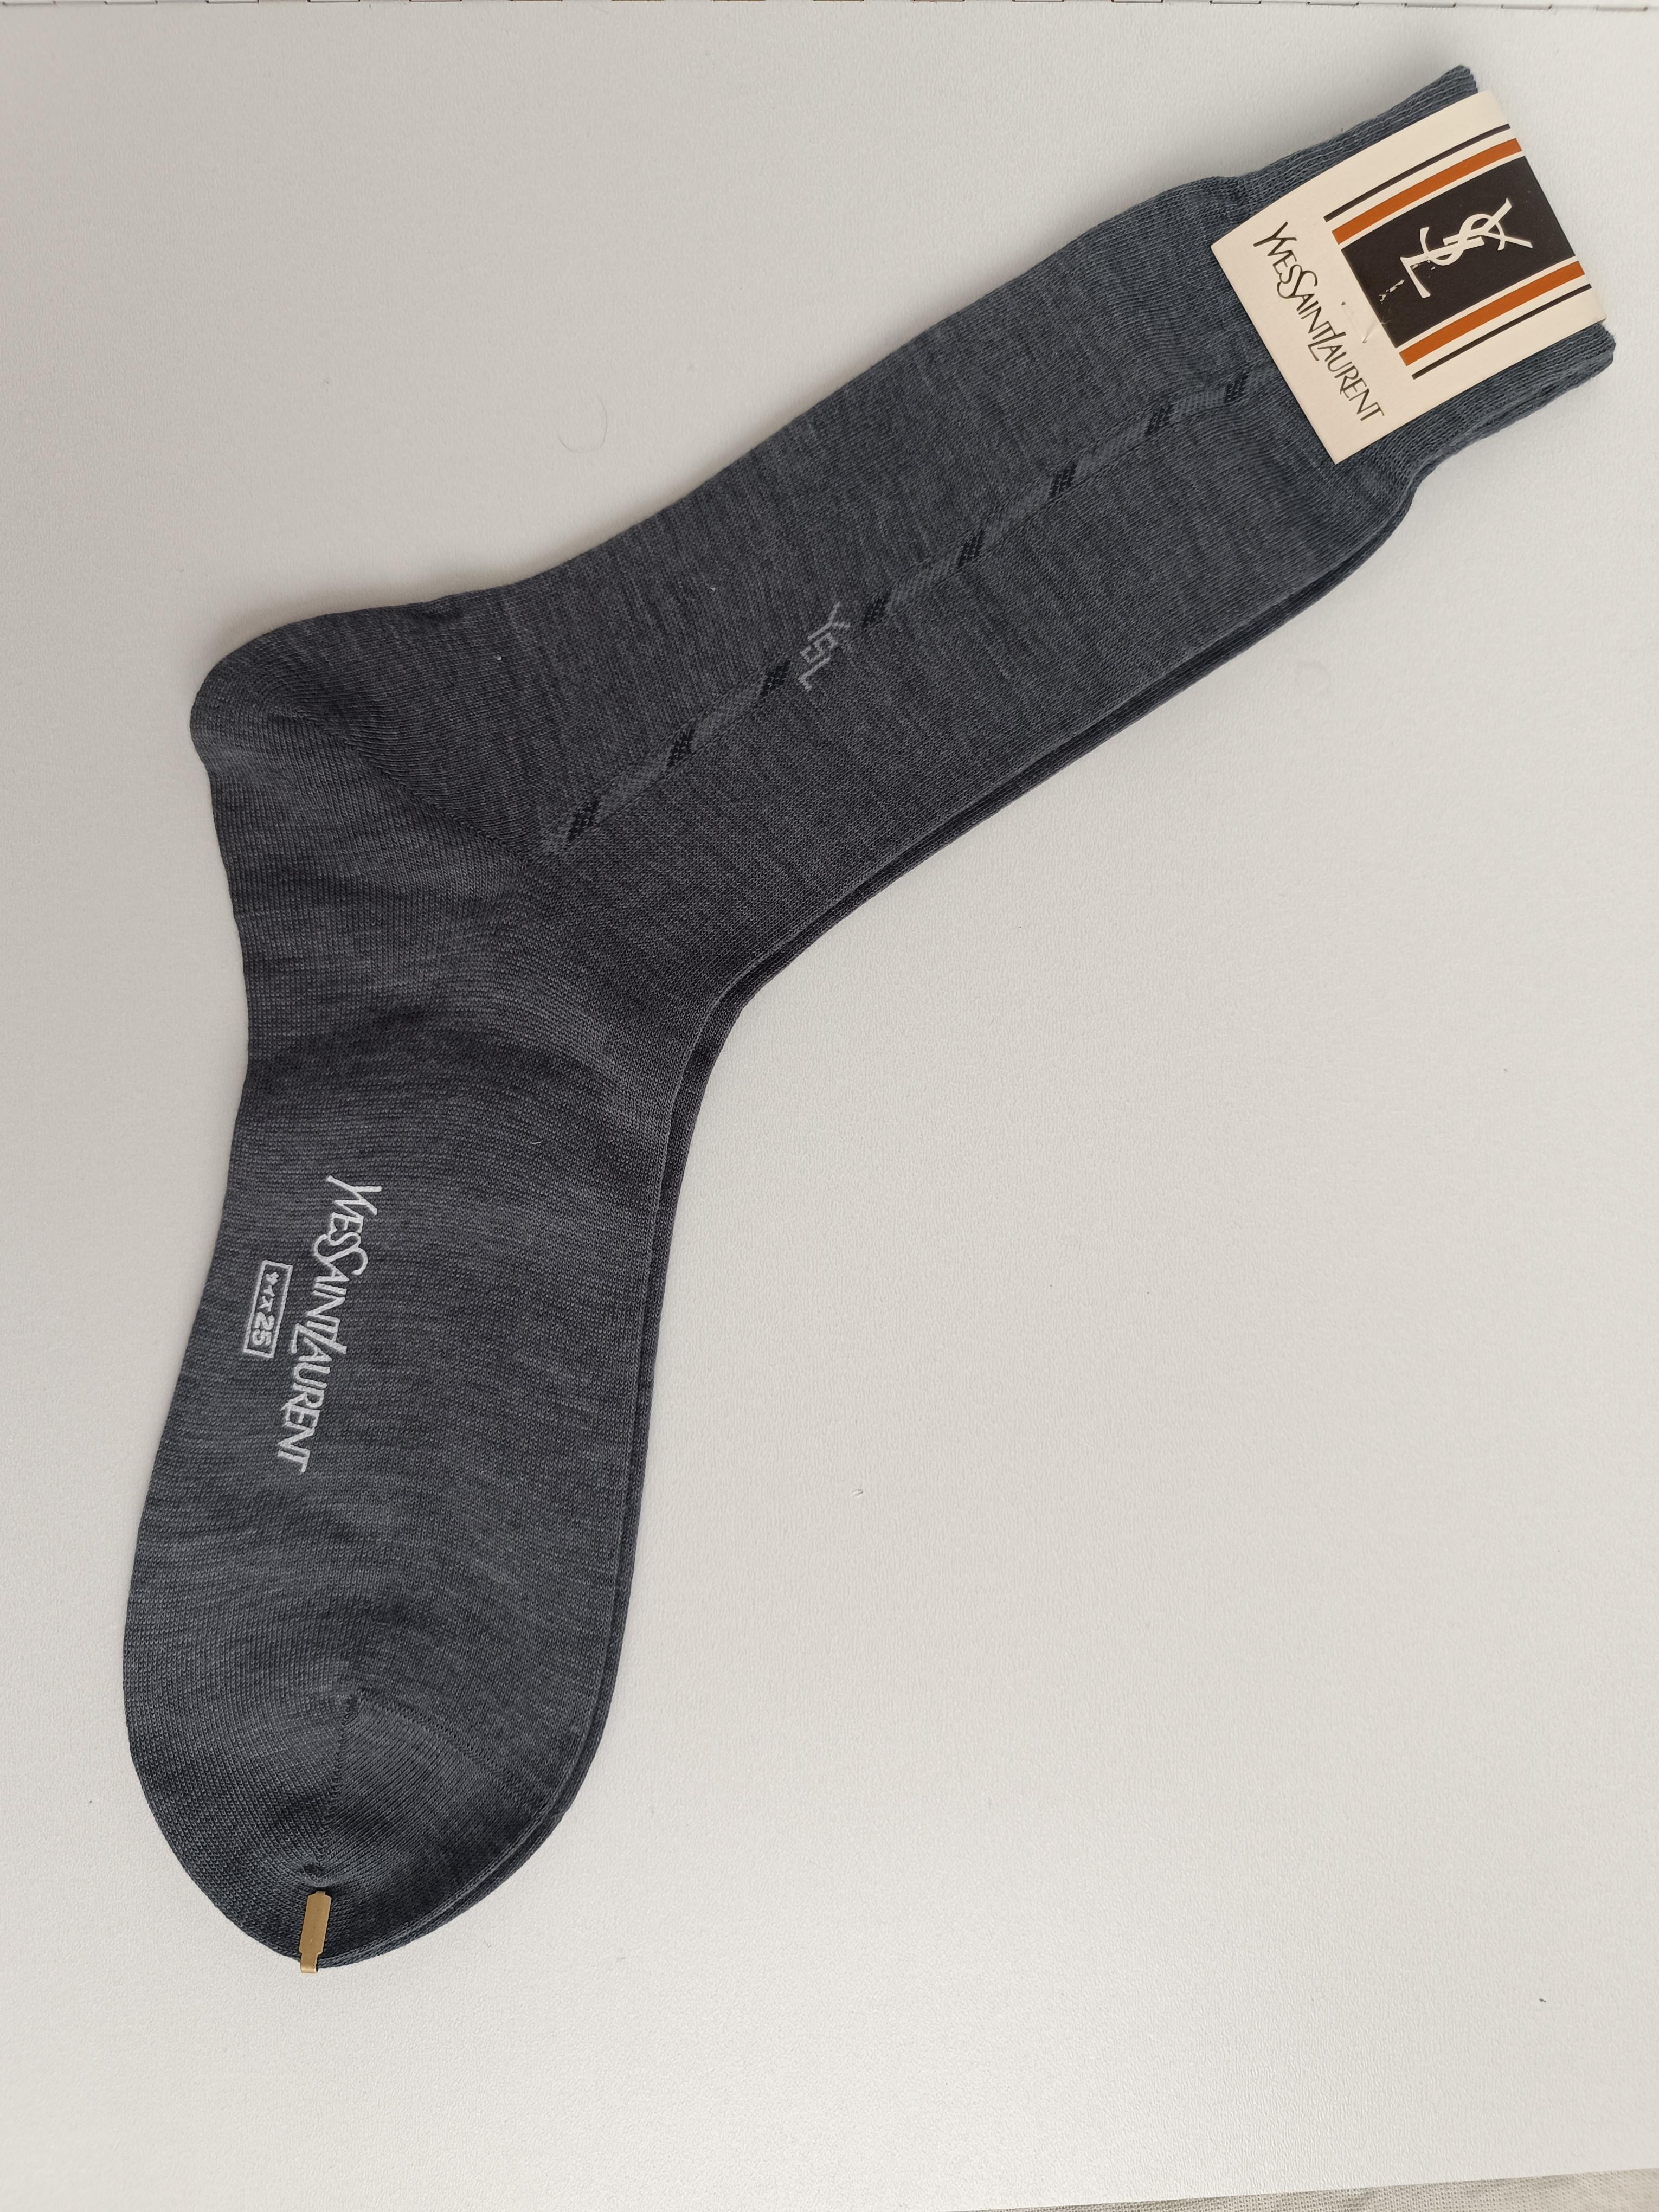 Authentische Yves Saint Laurent Vintage Herren Socken YSL
Land der Herstellung: Japan
Farbe: Grau mit Blau
Unisex.
Es ist toll zum Tragen oder Verschenken!
Wir bemühen uns, eine hohe Qualitätskontrolle zu gewährleisten, und größere Mängel werden auf